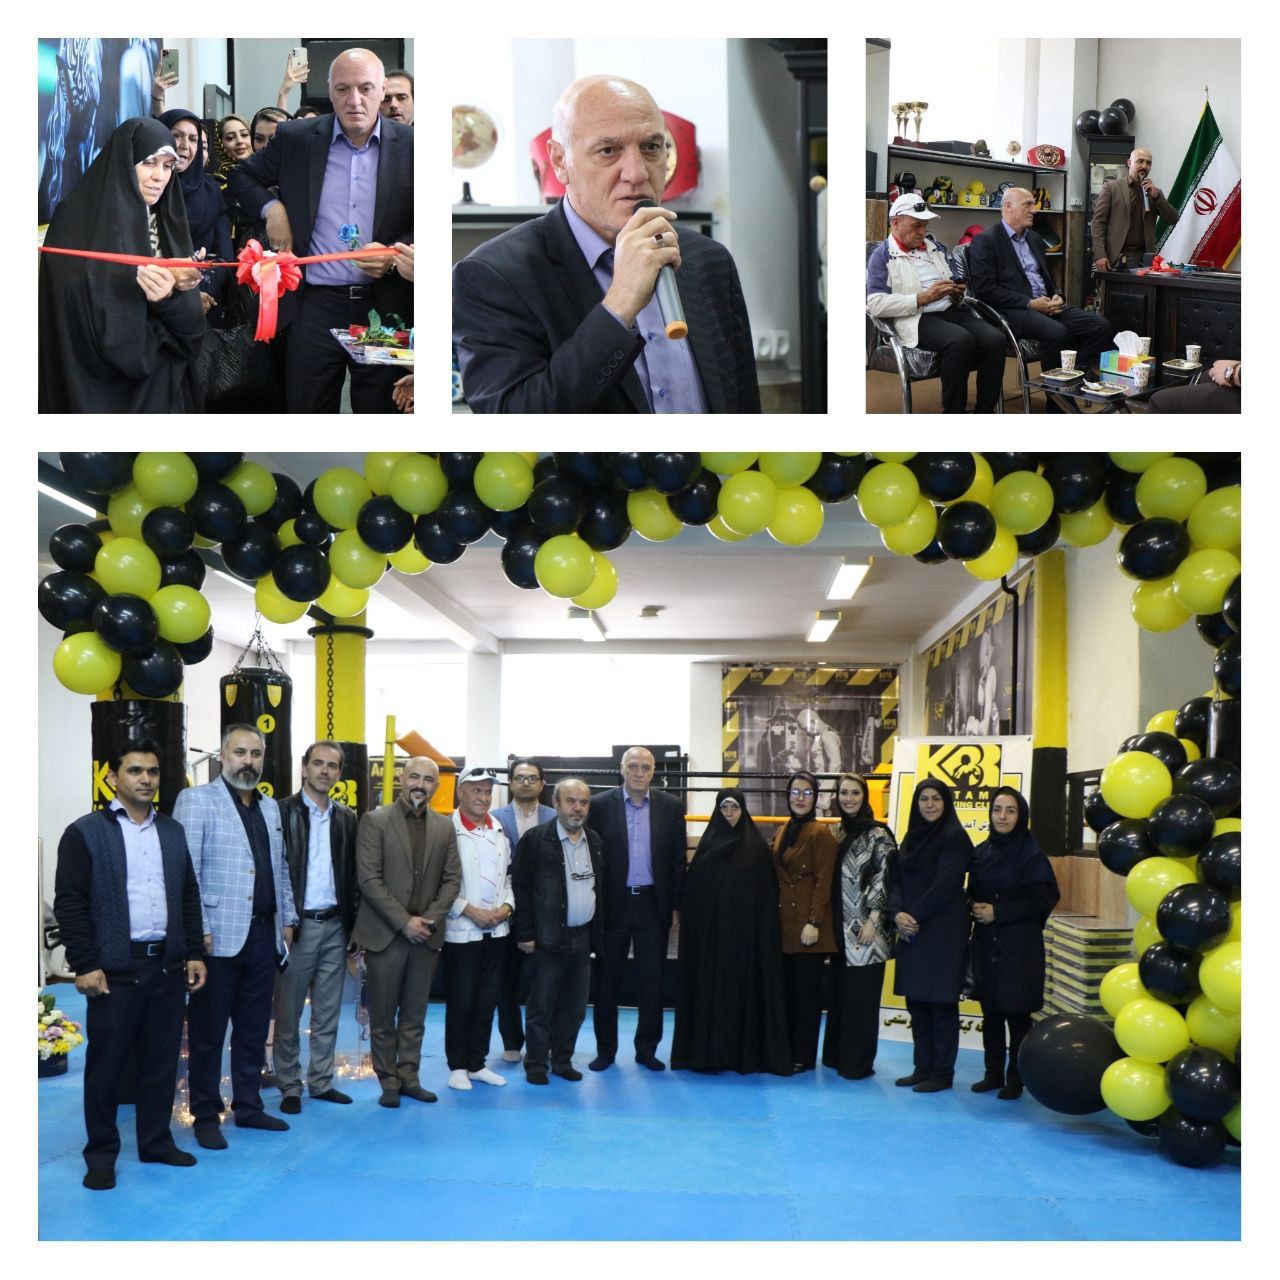 بزرگترین و تخصصی ترین باشگاه کیک بوکسینگ در آذربایجان شرقی افتتاح شد